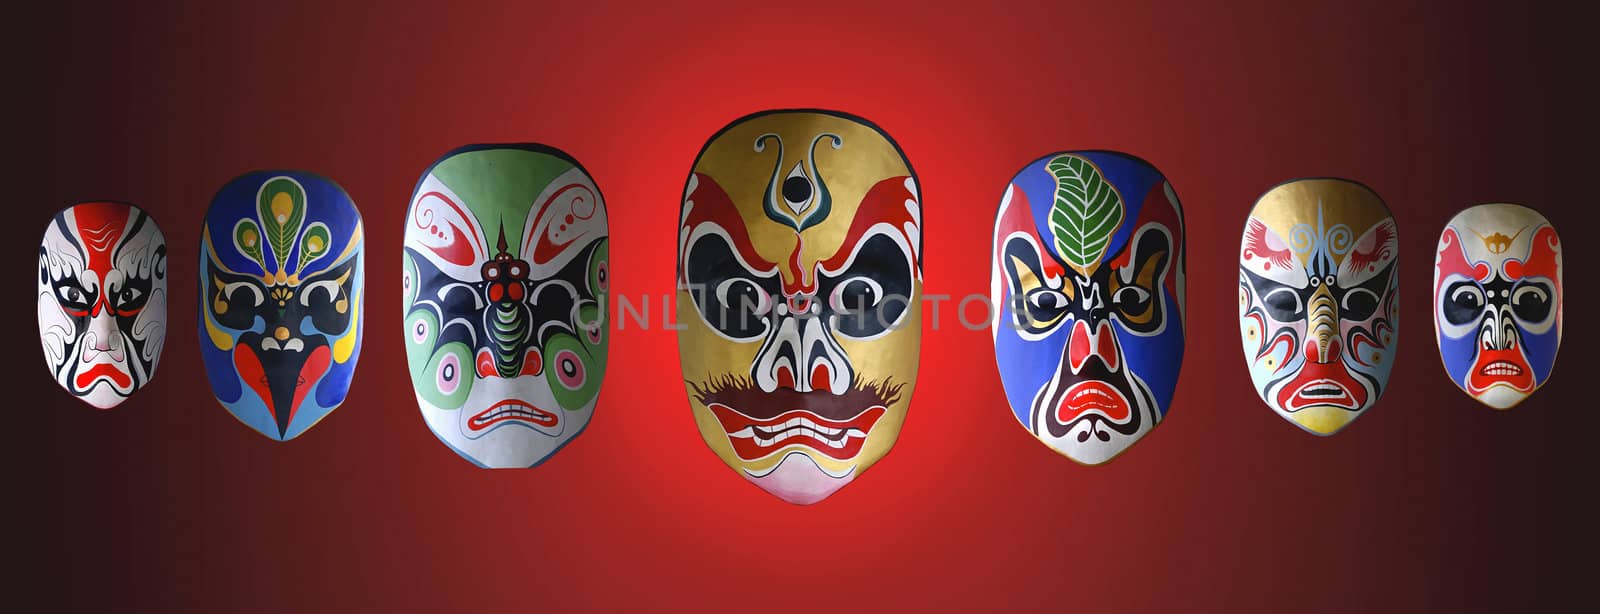 mask of chinese opera by jackq